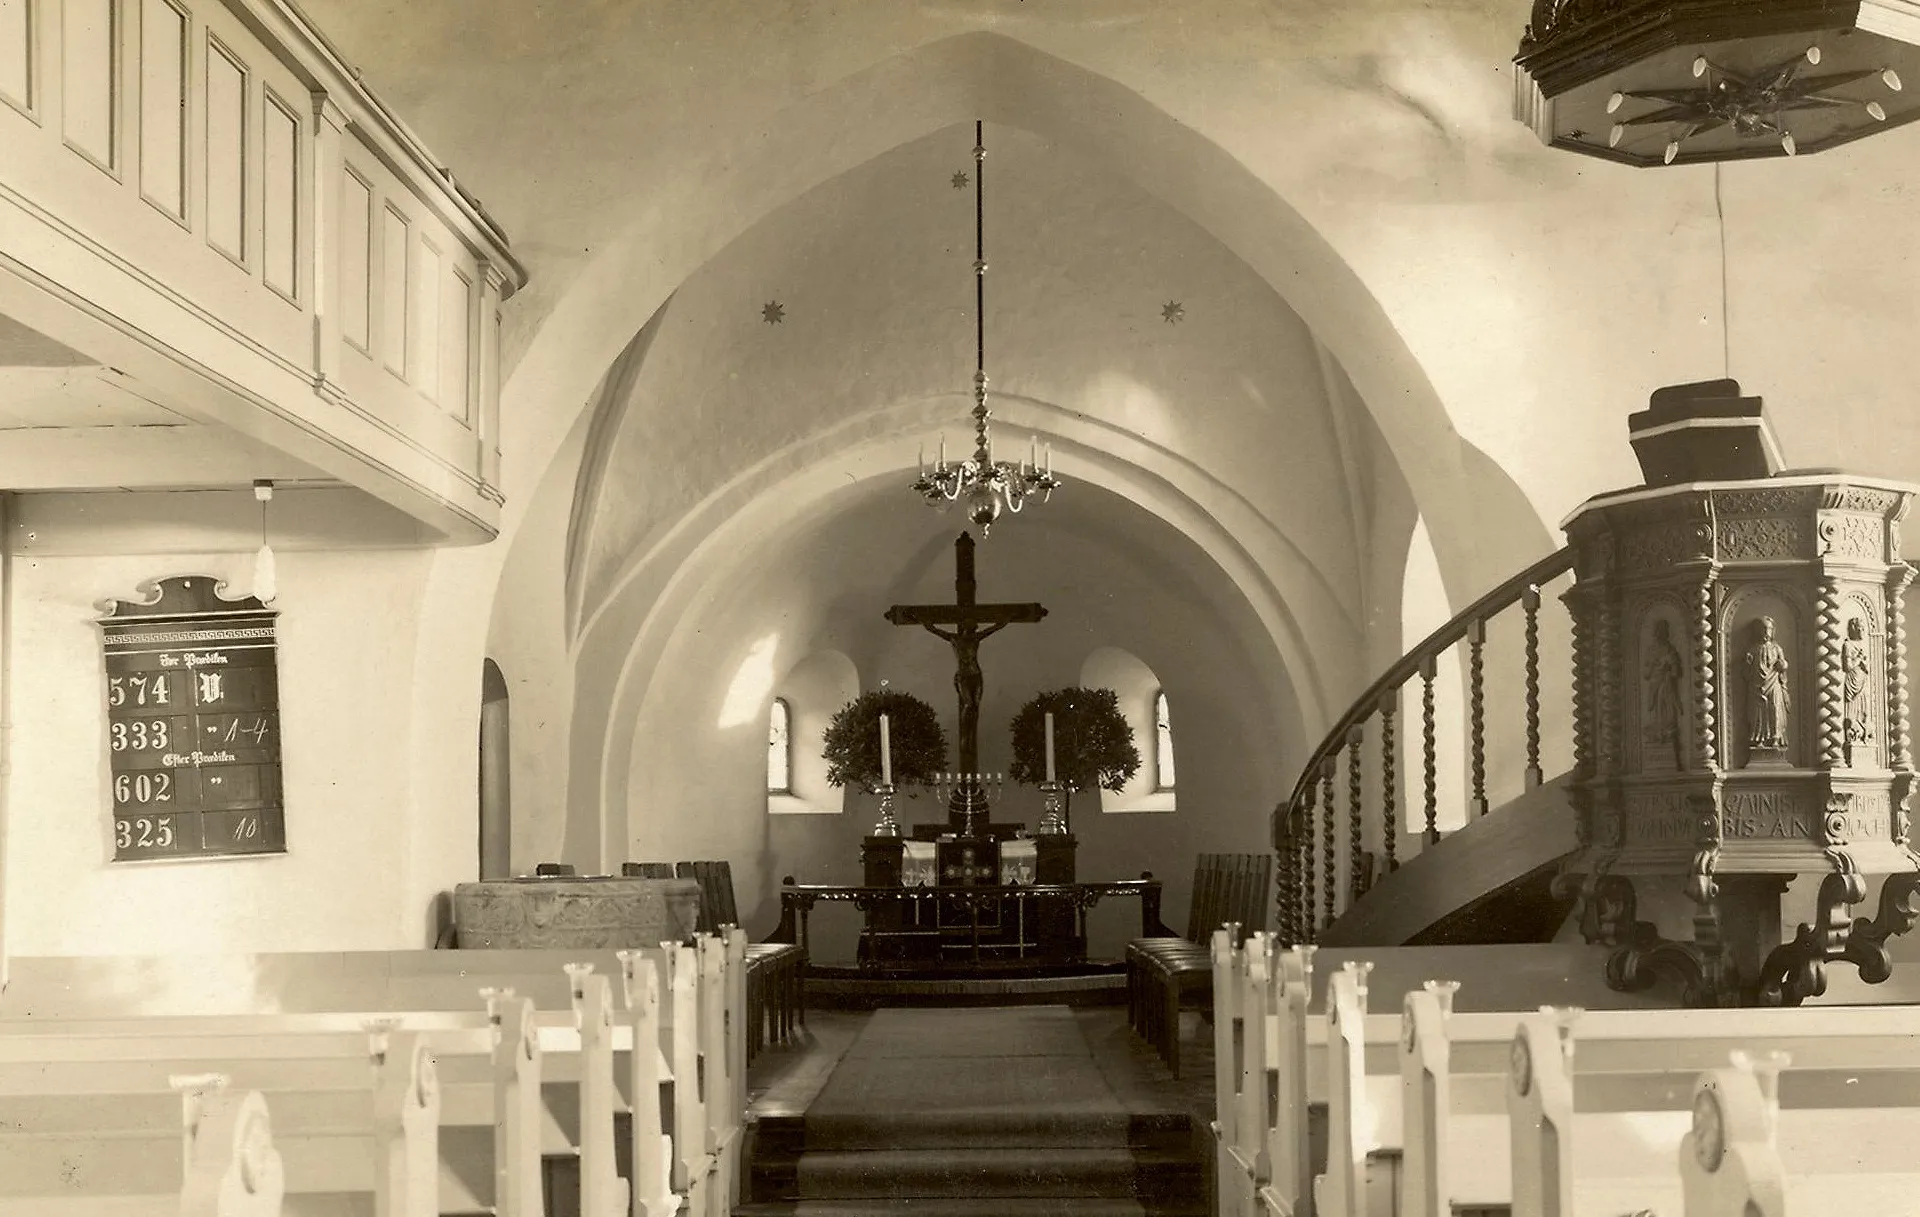 Gl. Haderslev Church - ca. 1925